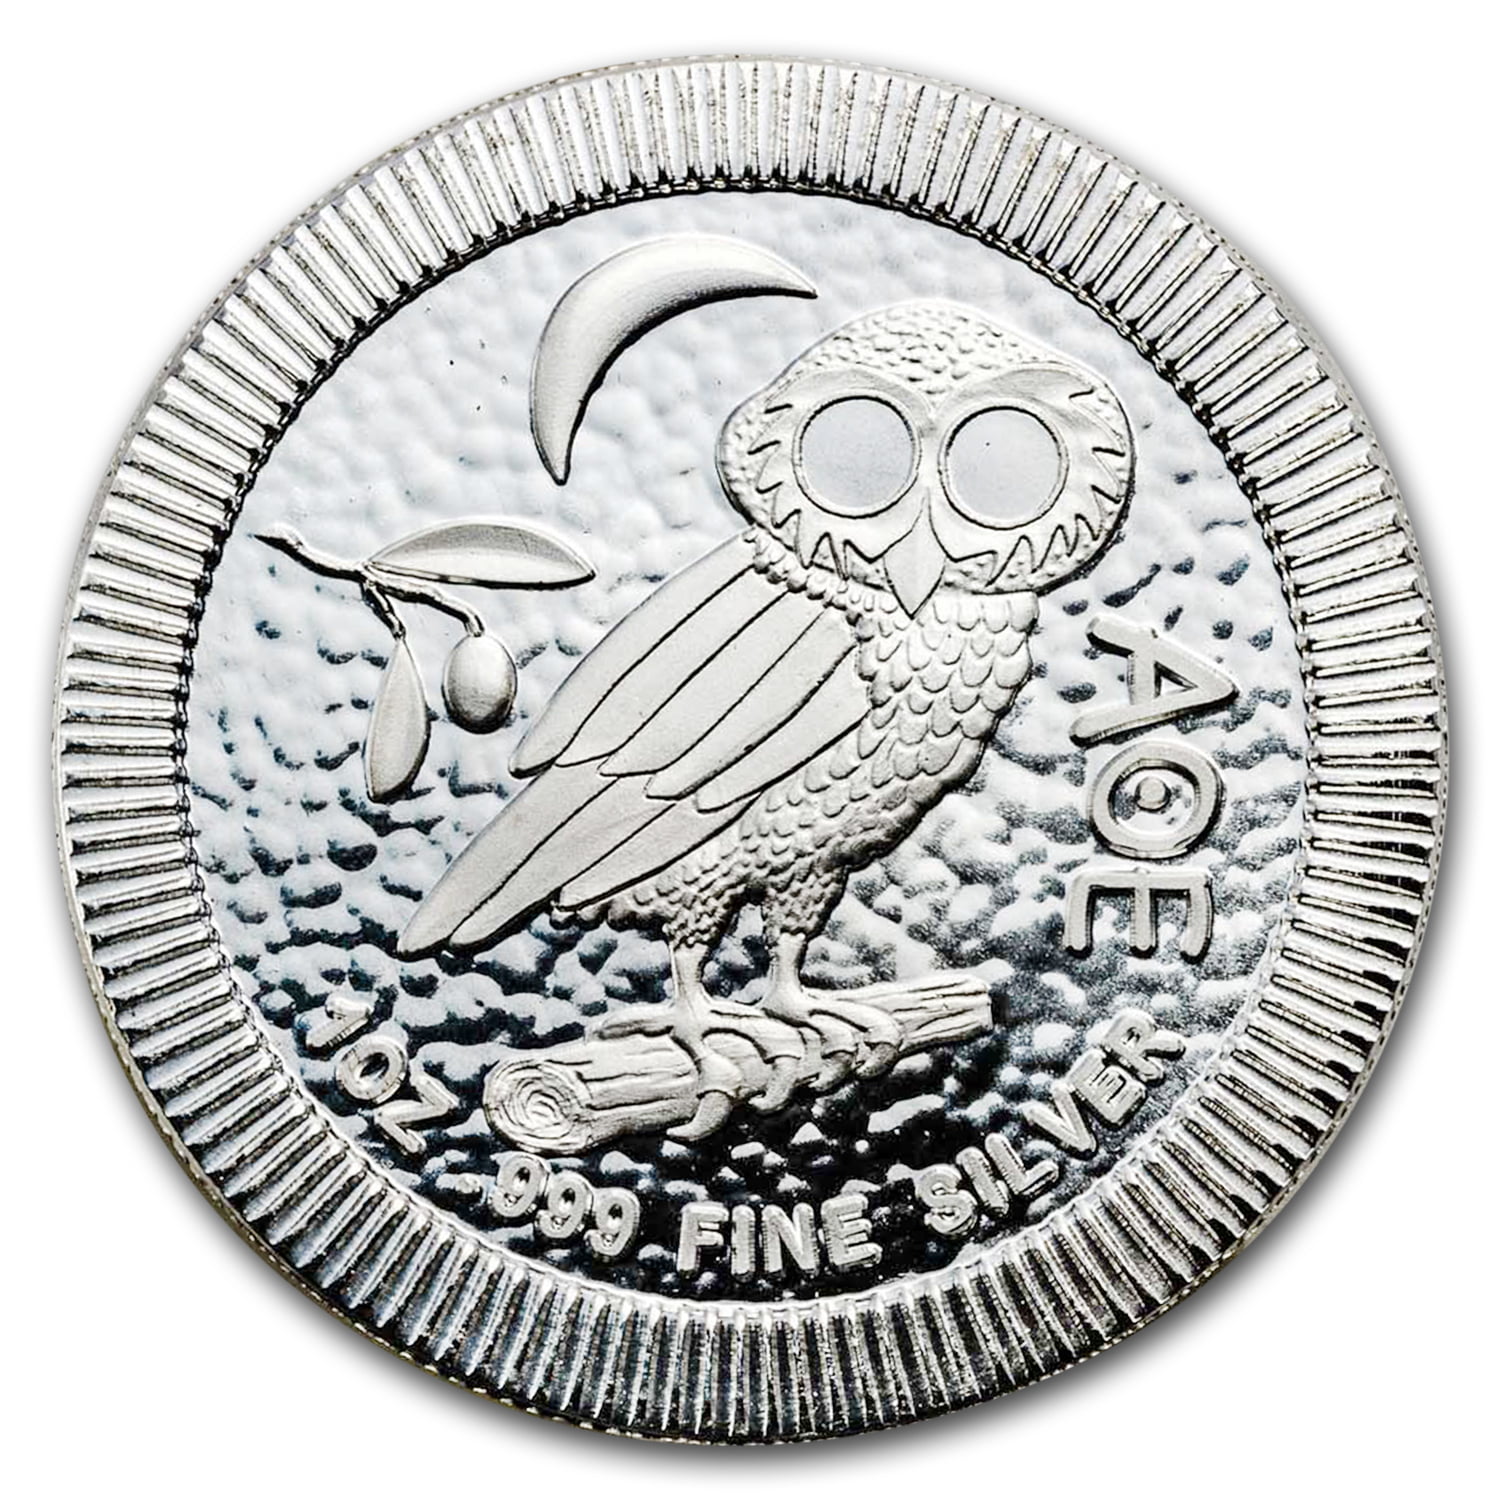 Серебряная монета весы. Монета с совой Афины. Серебряные монеты Ниуэ. Серебряная монета Сова  Афина. Монеты Ниуэ античное серебро.